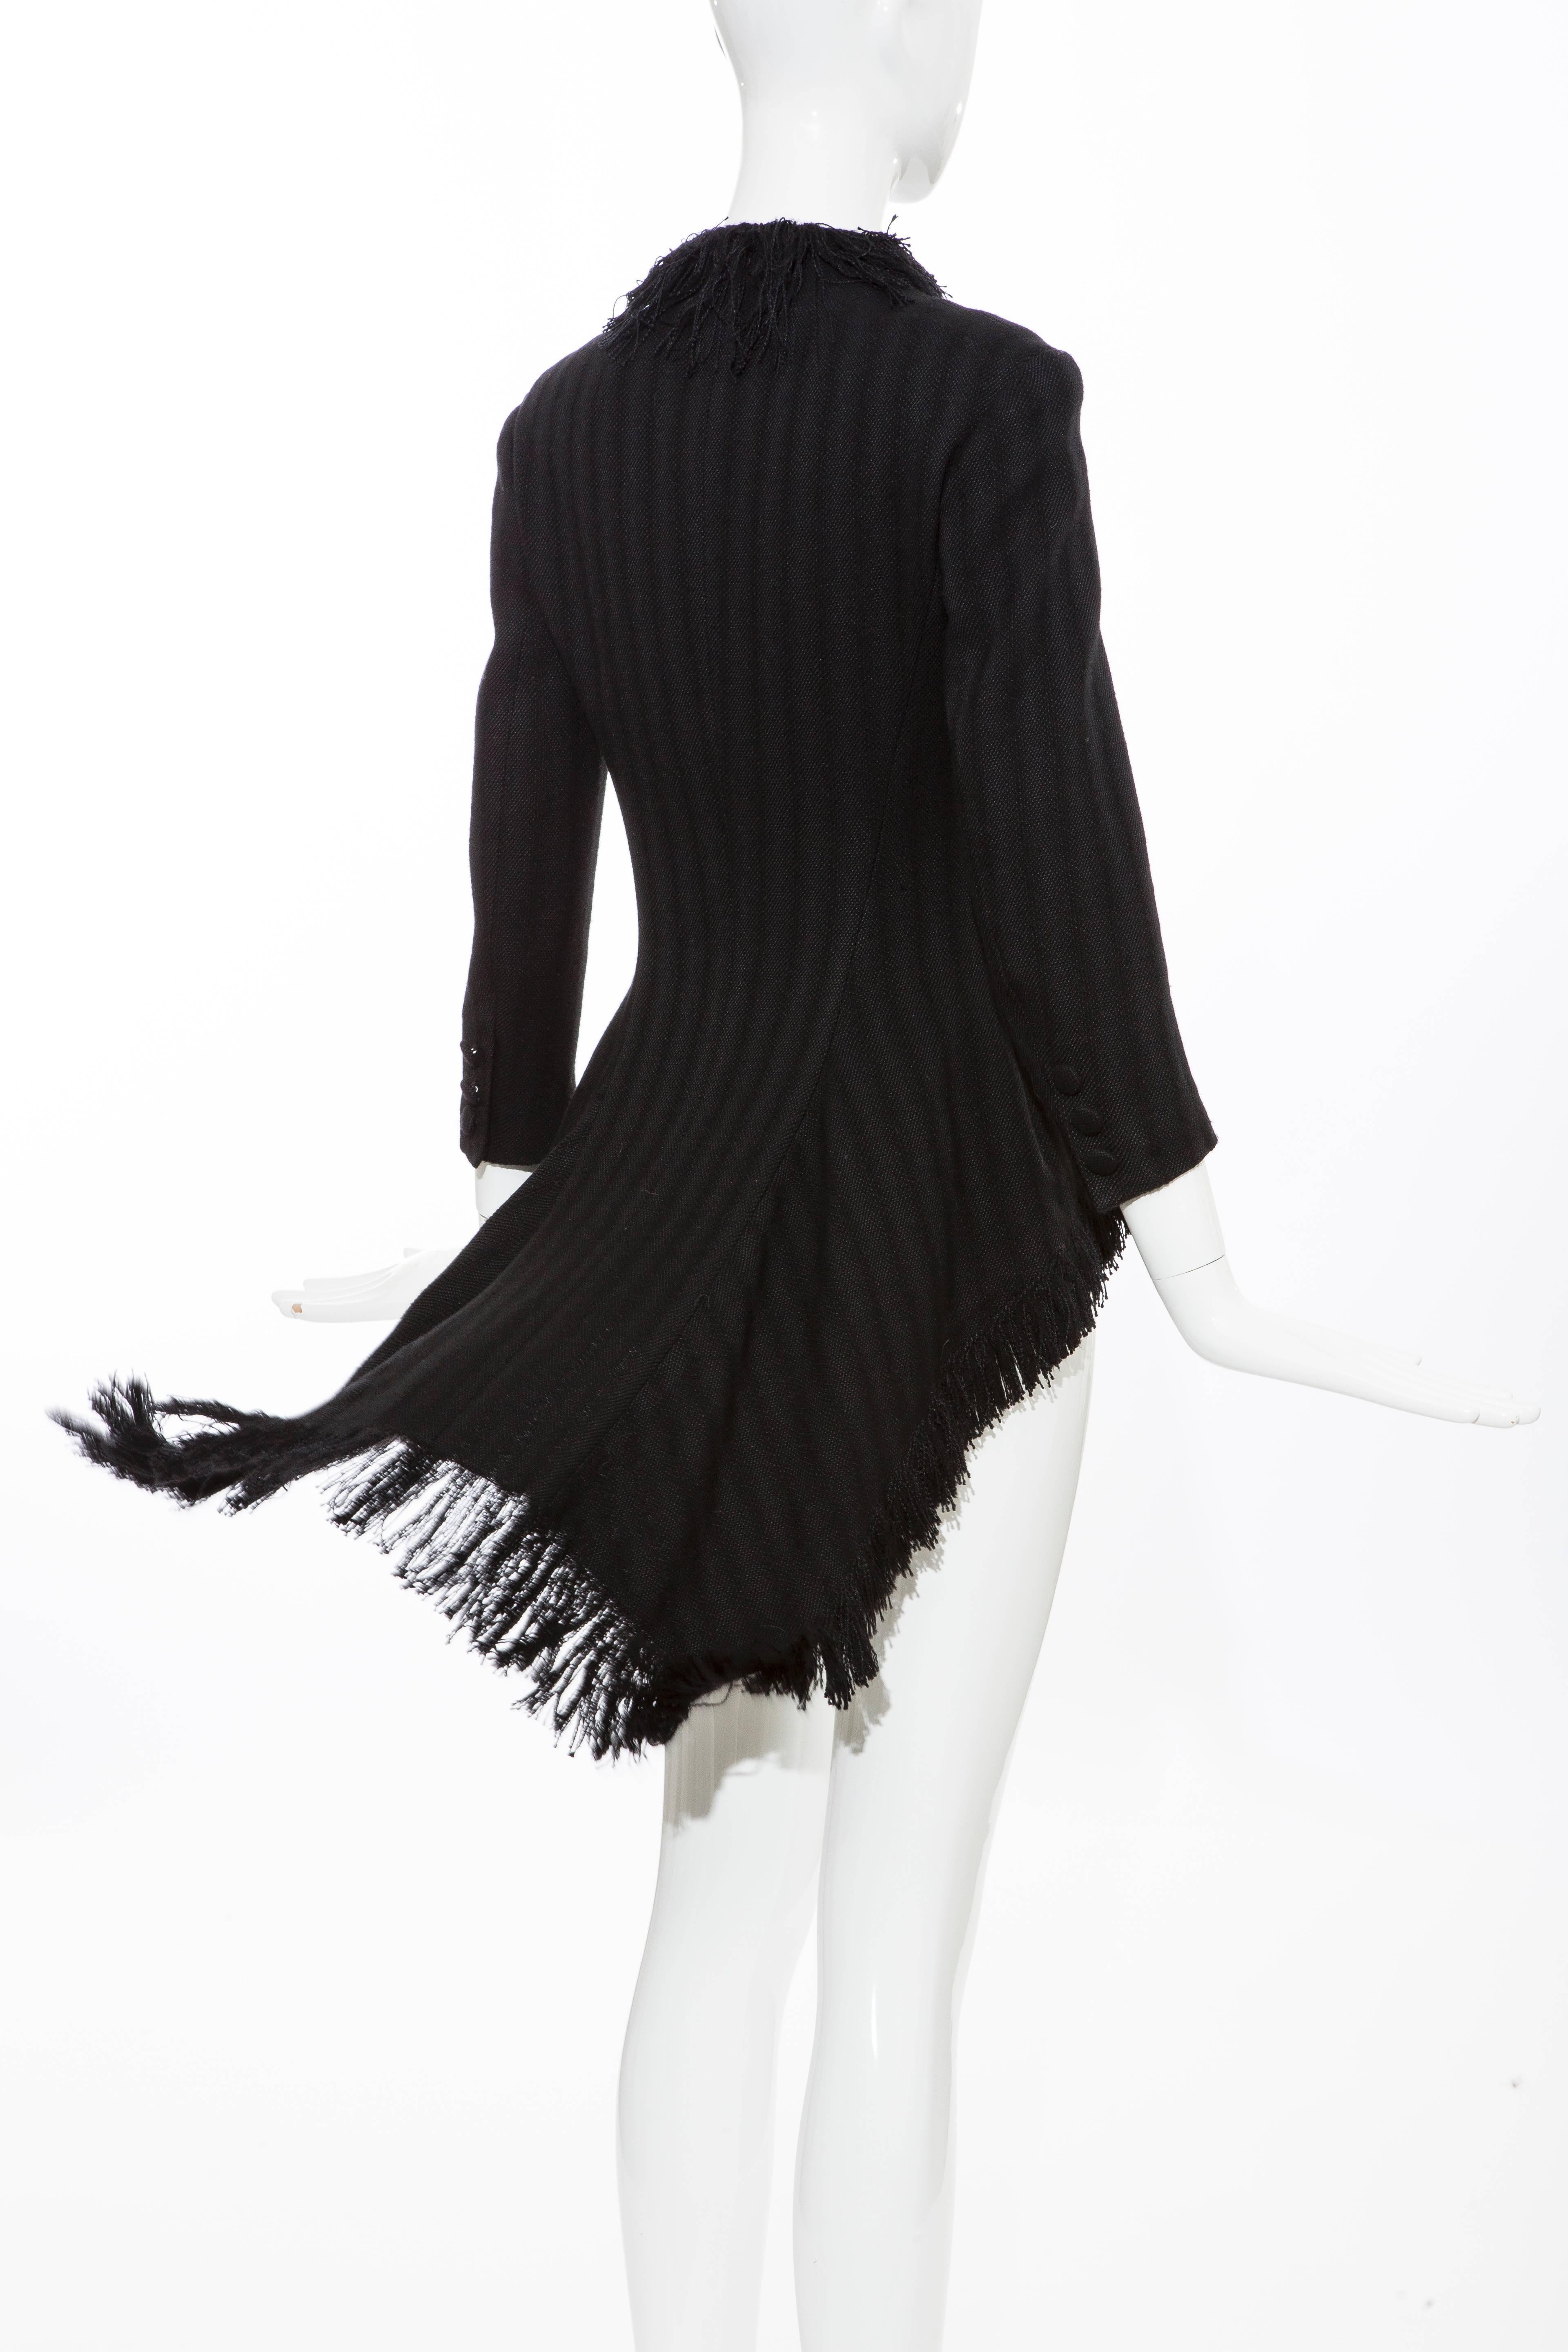 Yohji Yamamoto Black Silk Wool Tweed Cutaway Jacket With Fringe Trim, Fall 2013 For Sale 4